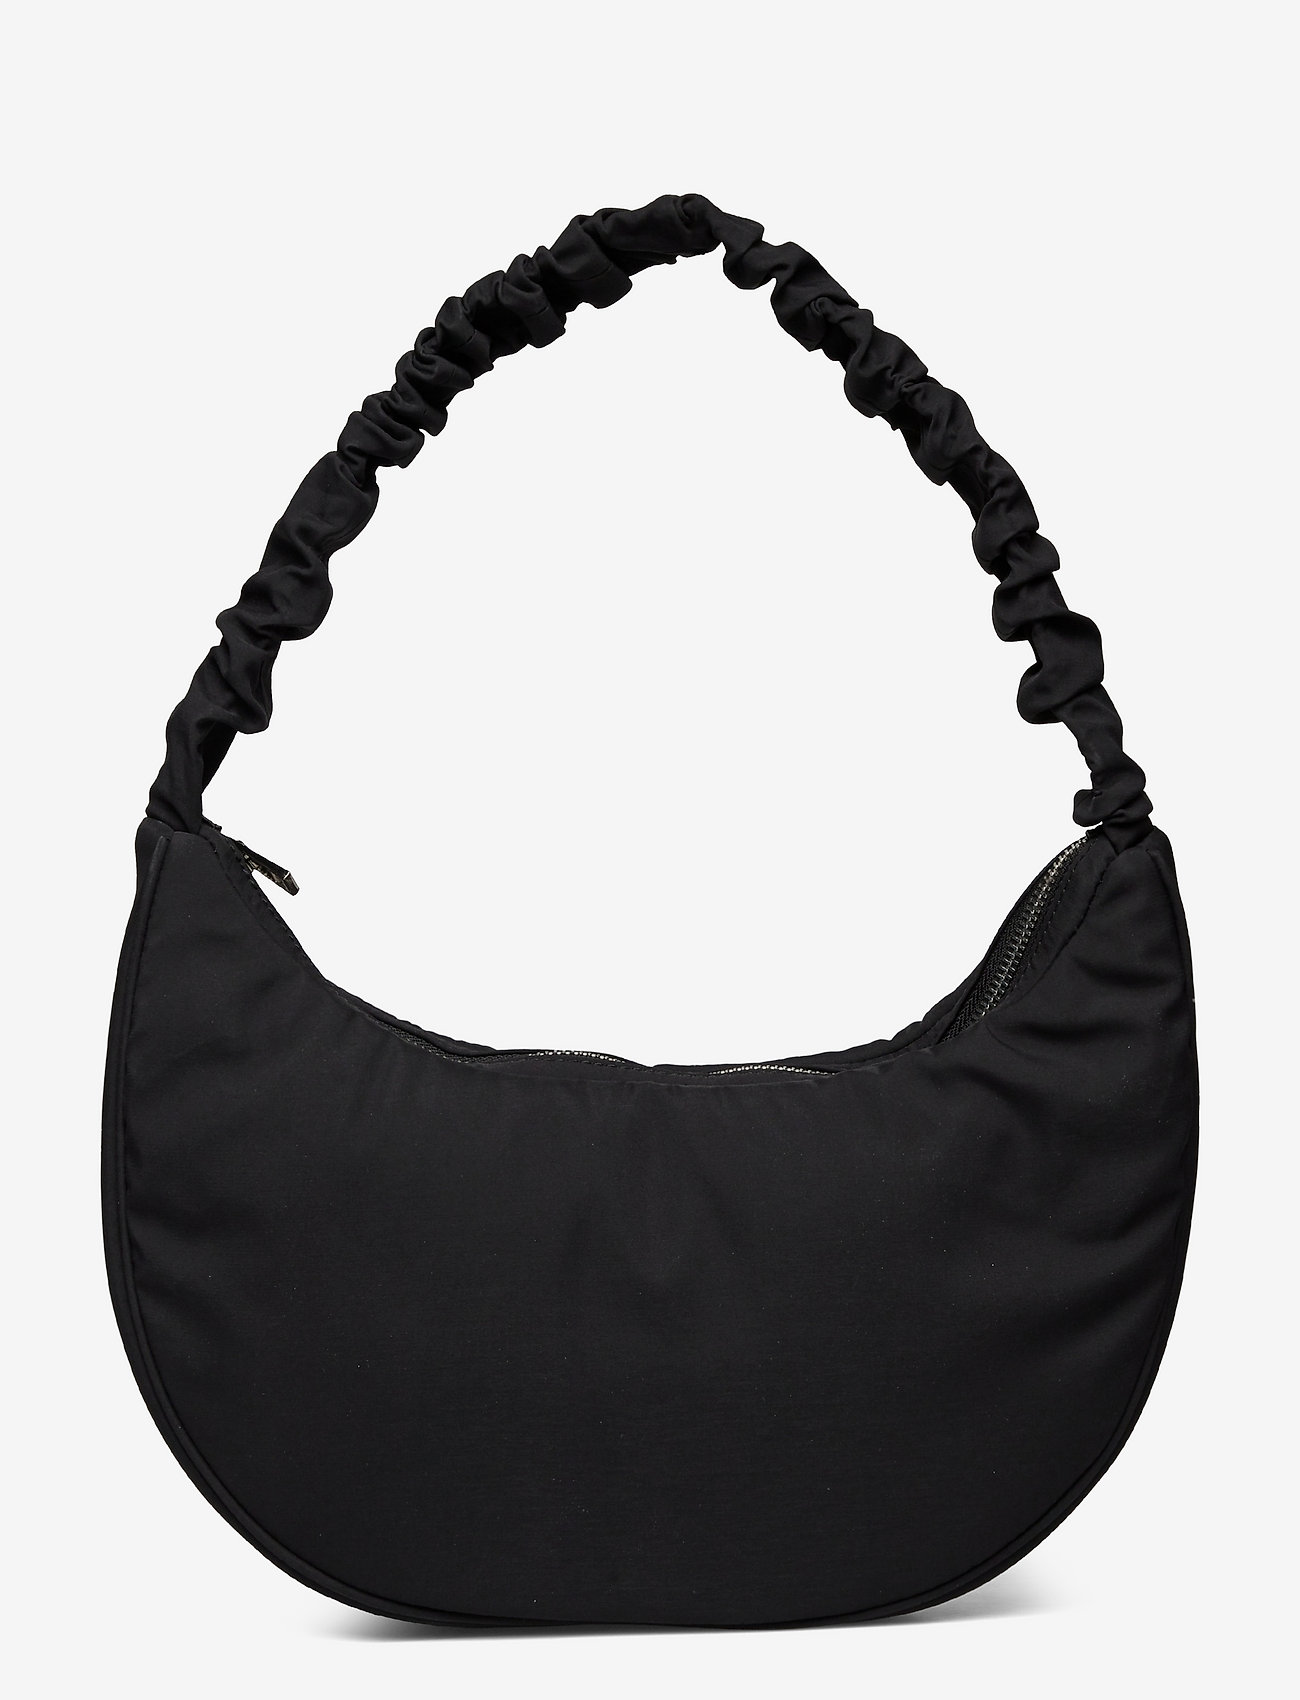 HVISK Moon Twill - Handbags | Boozt.com